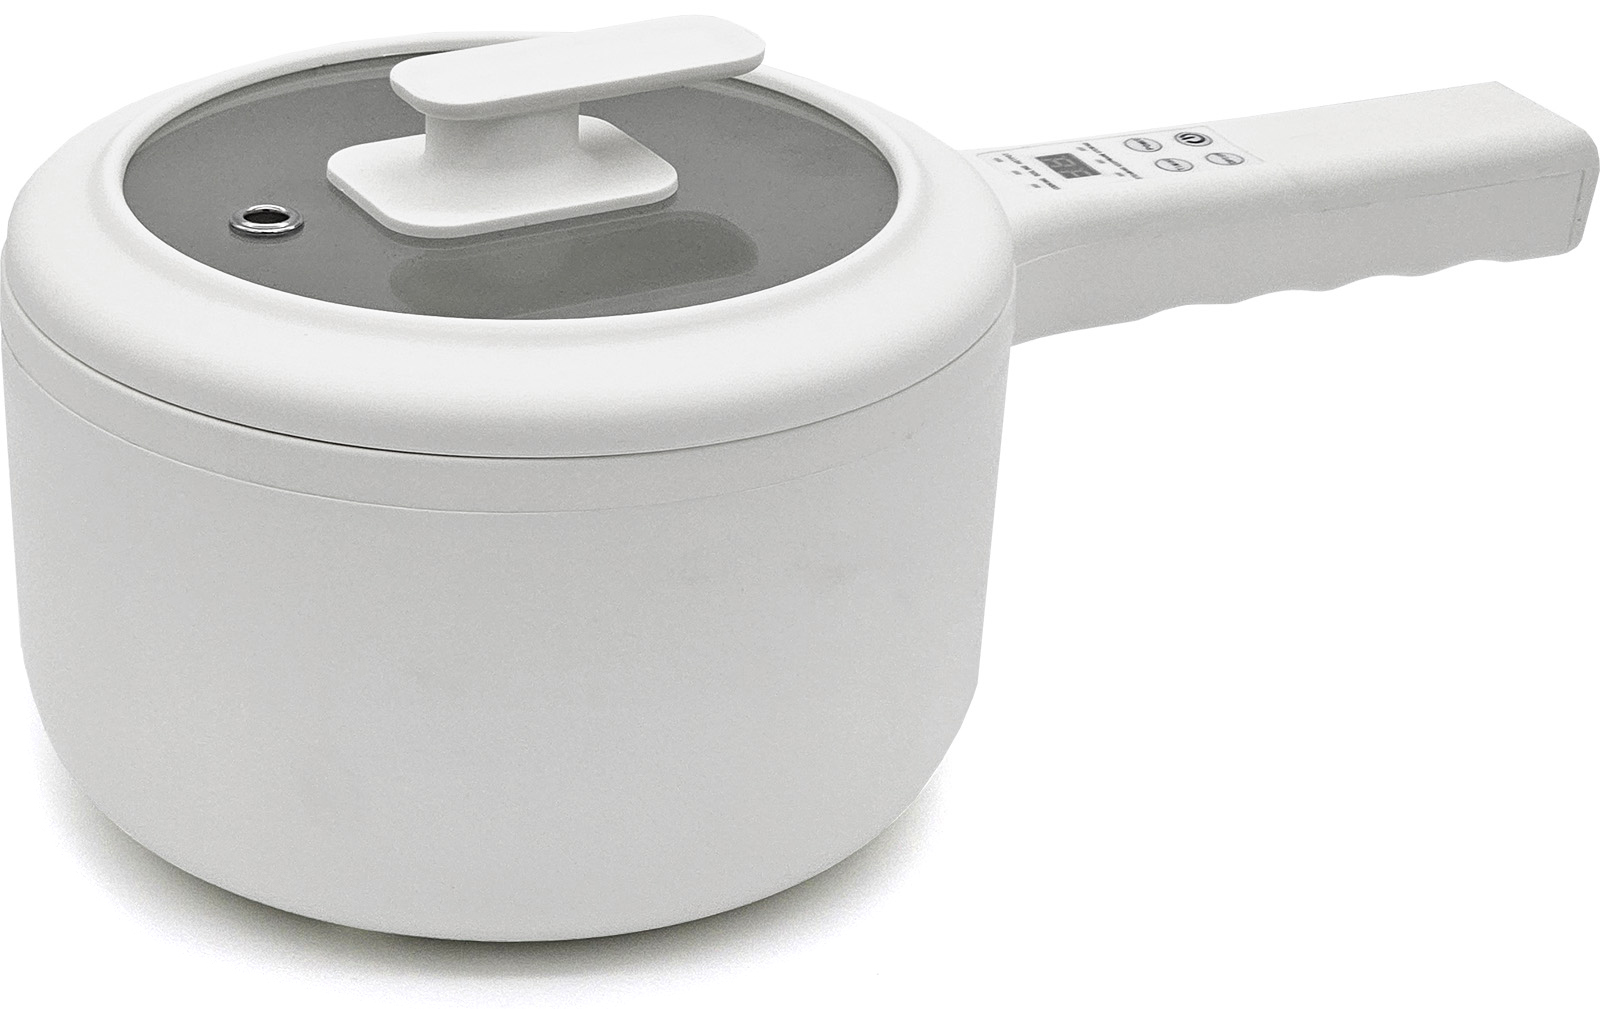 Мультиварка-сковорода Modengo Electric Cooking Pot MDG-04 (C0097) Modengo